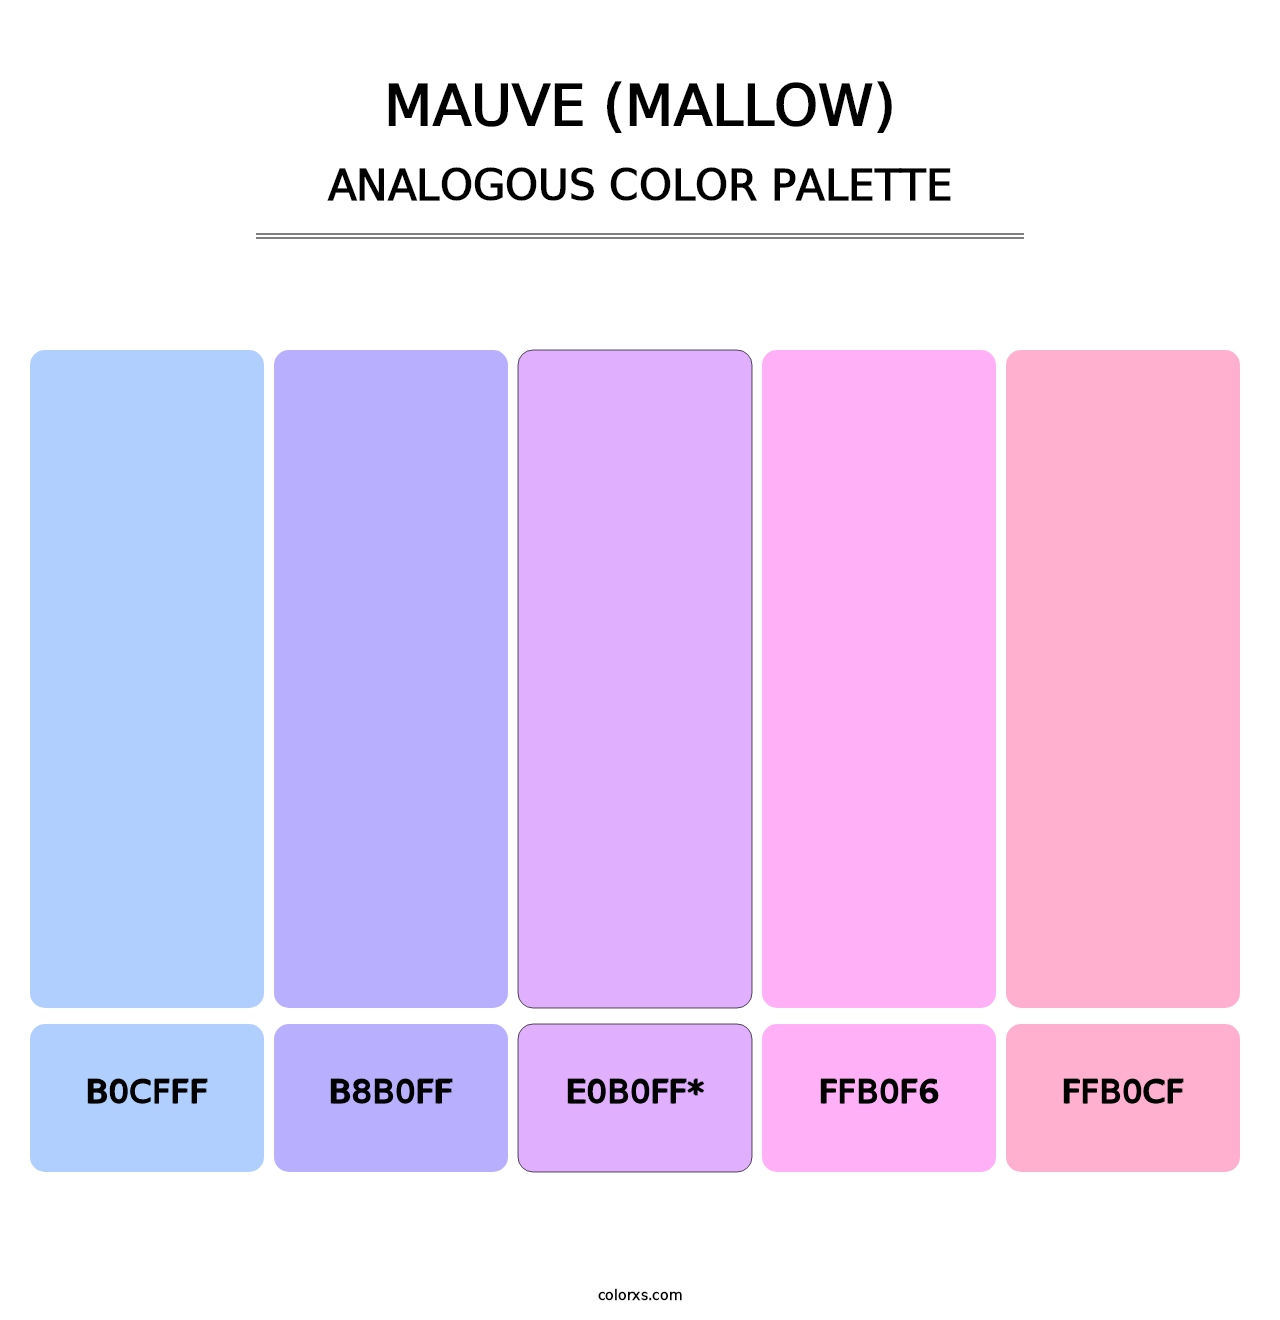 Mauve (Mallow) - Analogous Color Palette